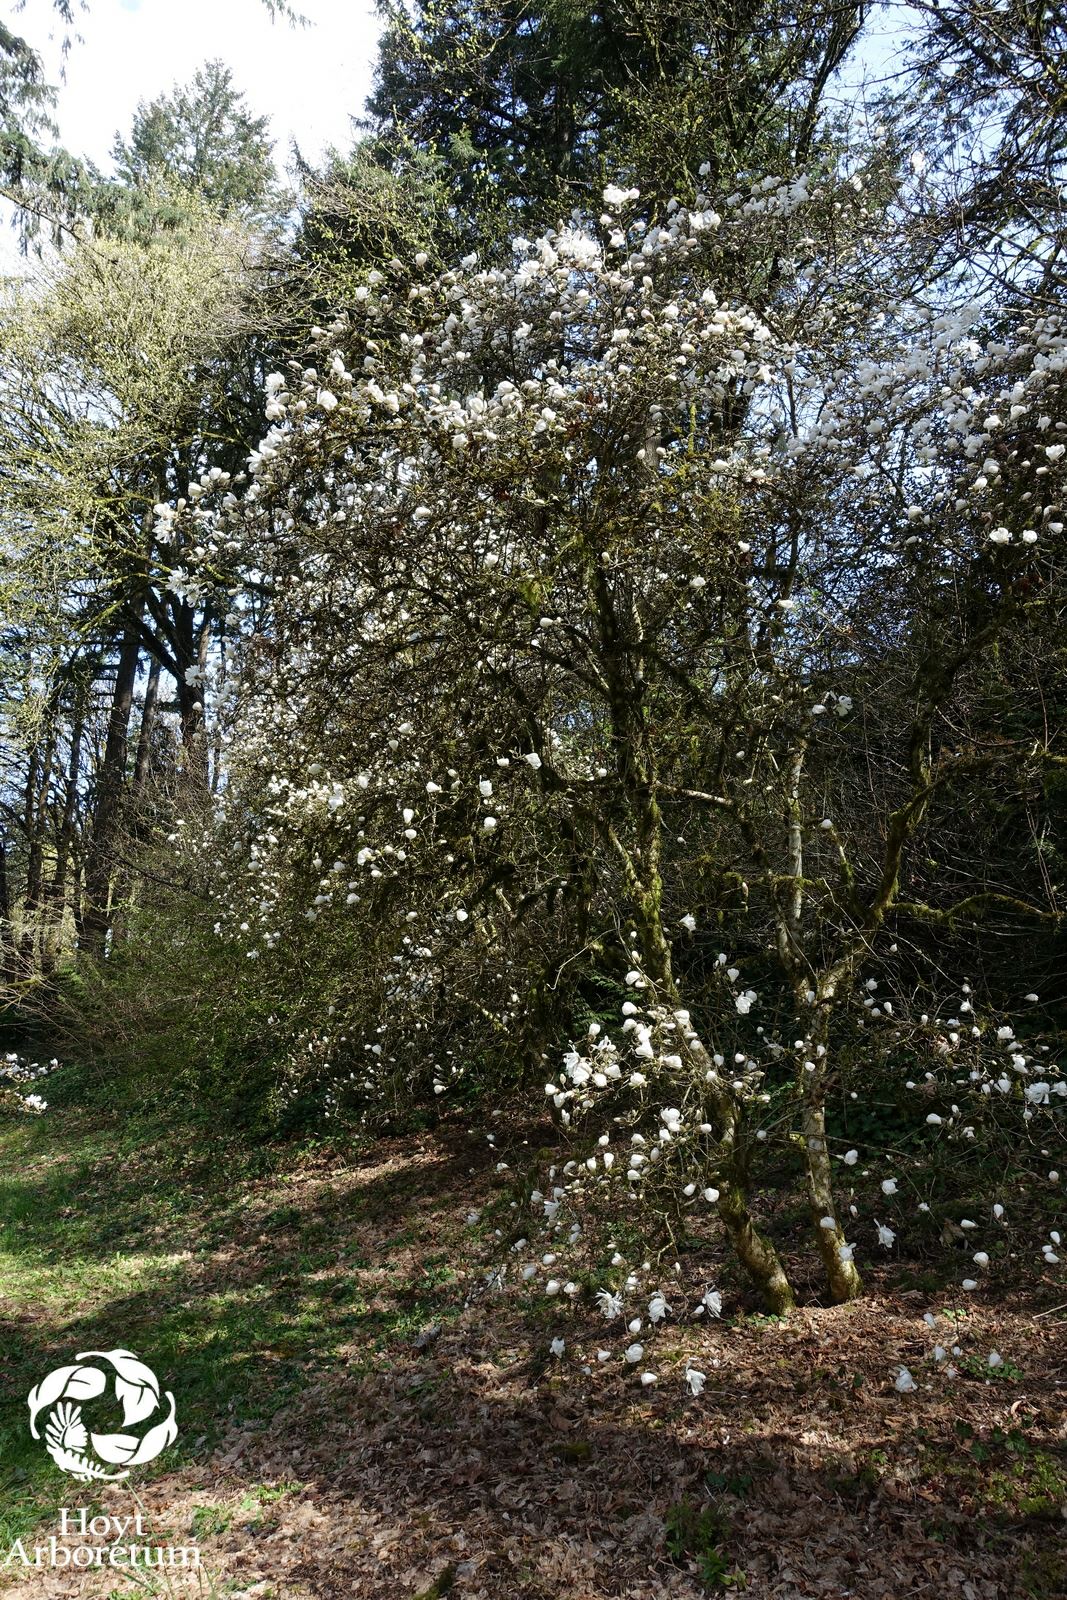 Magnolia stellata - Star Magnolia